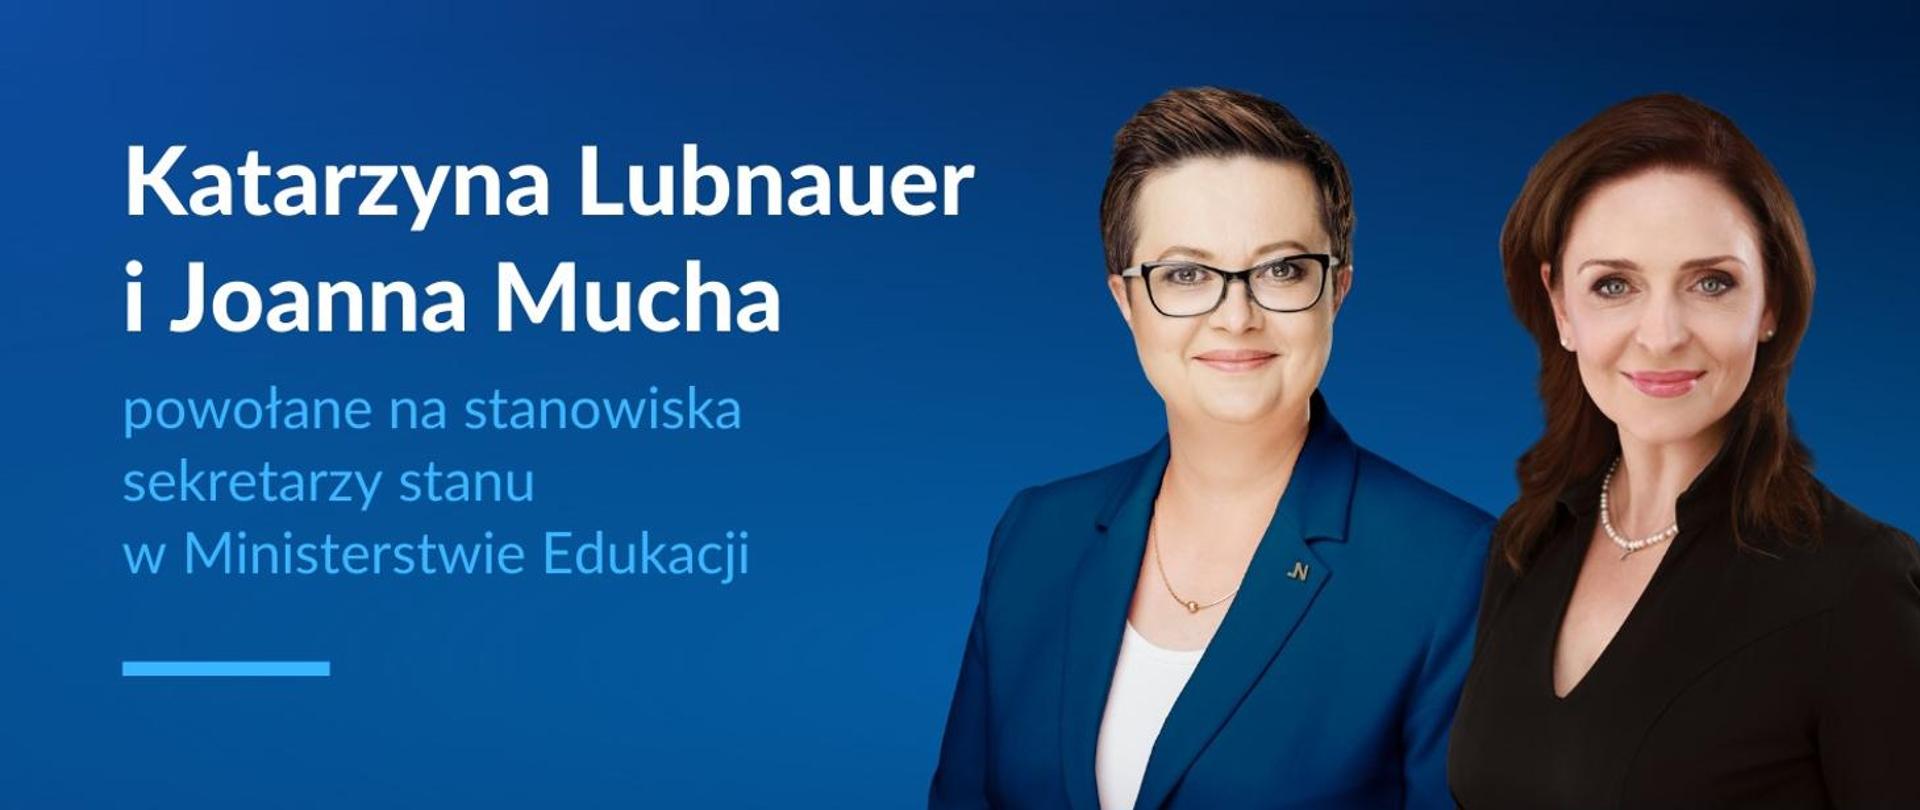 Zdjęcie dwóch kobiet na niebieskim tle, obok napis Katarzyna Lubnauer i Joanna Mucha powołane na stanowiska sekretarzy stanu w Ministerstwie Edukacji.